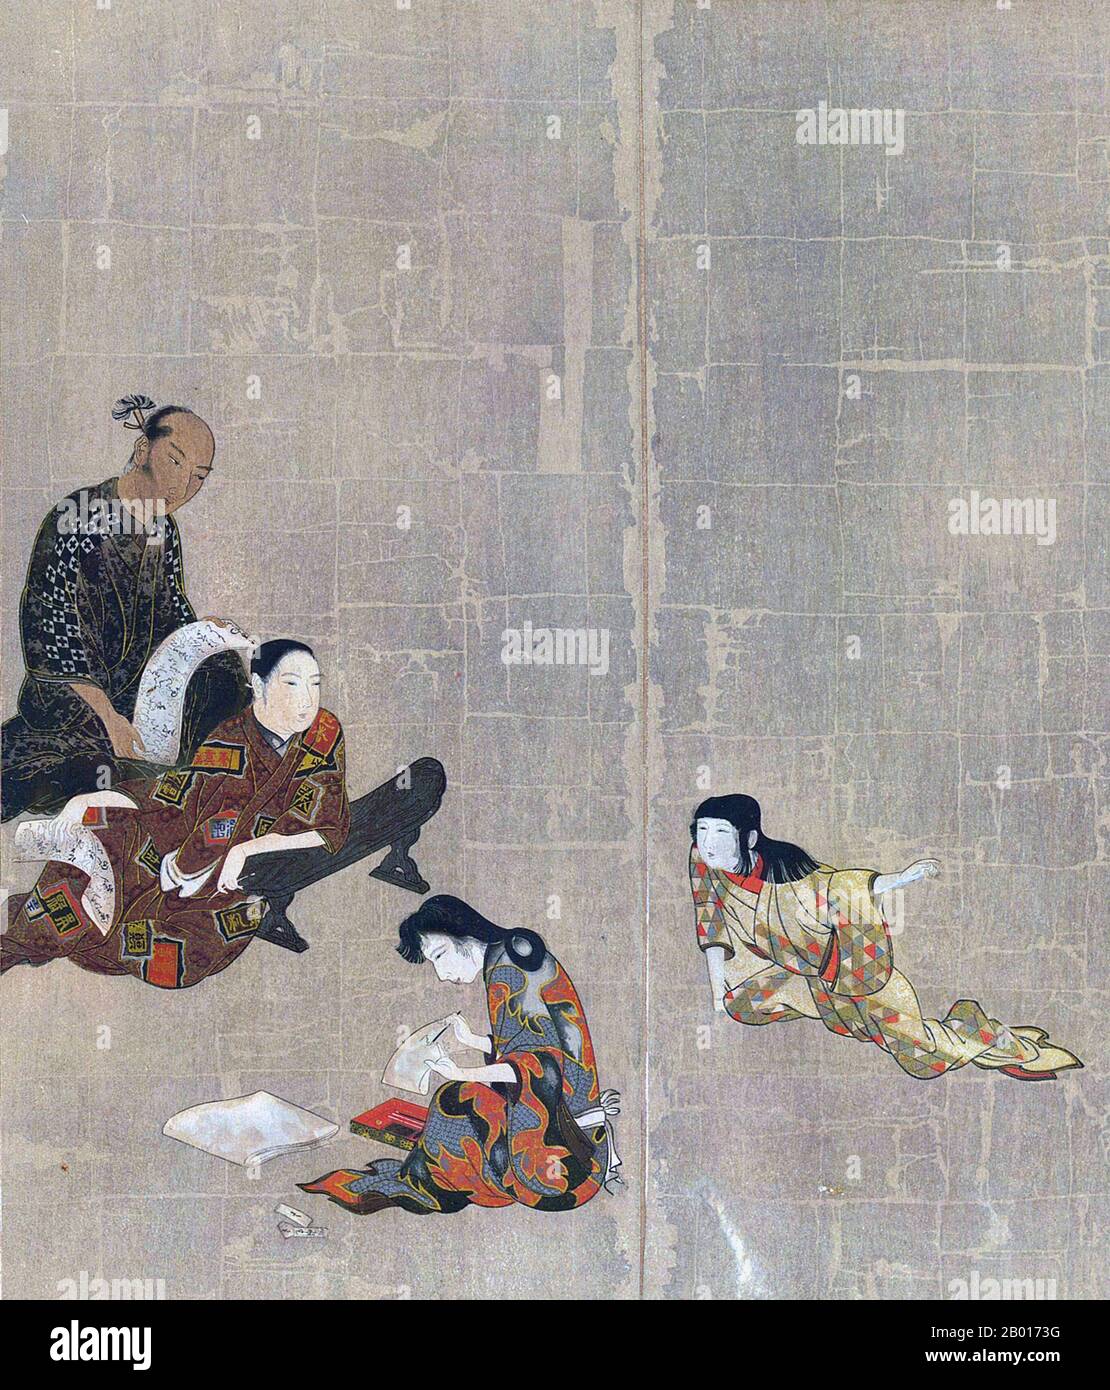 Giappone: Sezione dallo schermo di Hikone, un dipinto di schermo pieghevole di byobu, c.. 1624-1644. Lo schermo Hikone era uno schermo pieghevole byobo dell'era di Kan'ei (c.. 1624-1644) del periodo Edo. Dipinta su carta in foglia d'oro e ripiegata in sei parti, lo schermo raffigura i quartieri del piacere di Kyoto, con persone che suonano musica e giochi. E' un rappresentante della prima pittura di genere giapponese moderna, e vista da alcuni come la prima opera d'arte ukiyo-e. È stato designato un tesoro nazionale nel 1955. Foto Stock